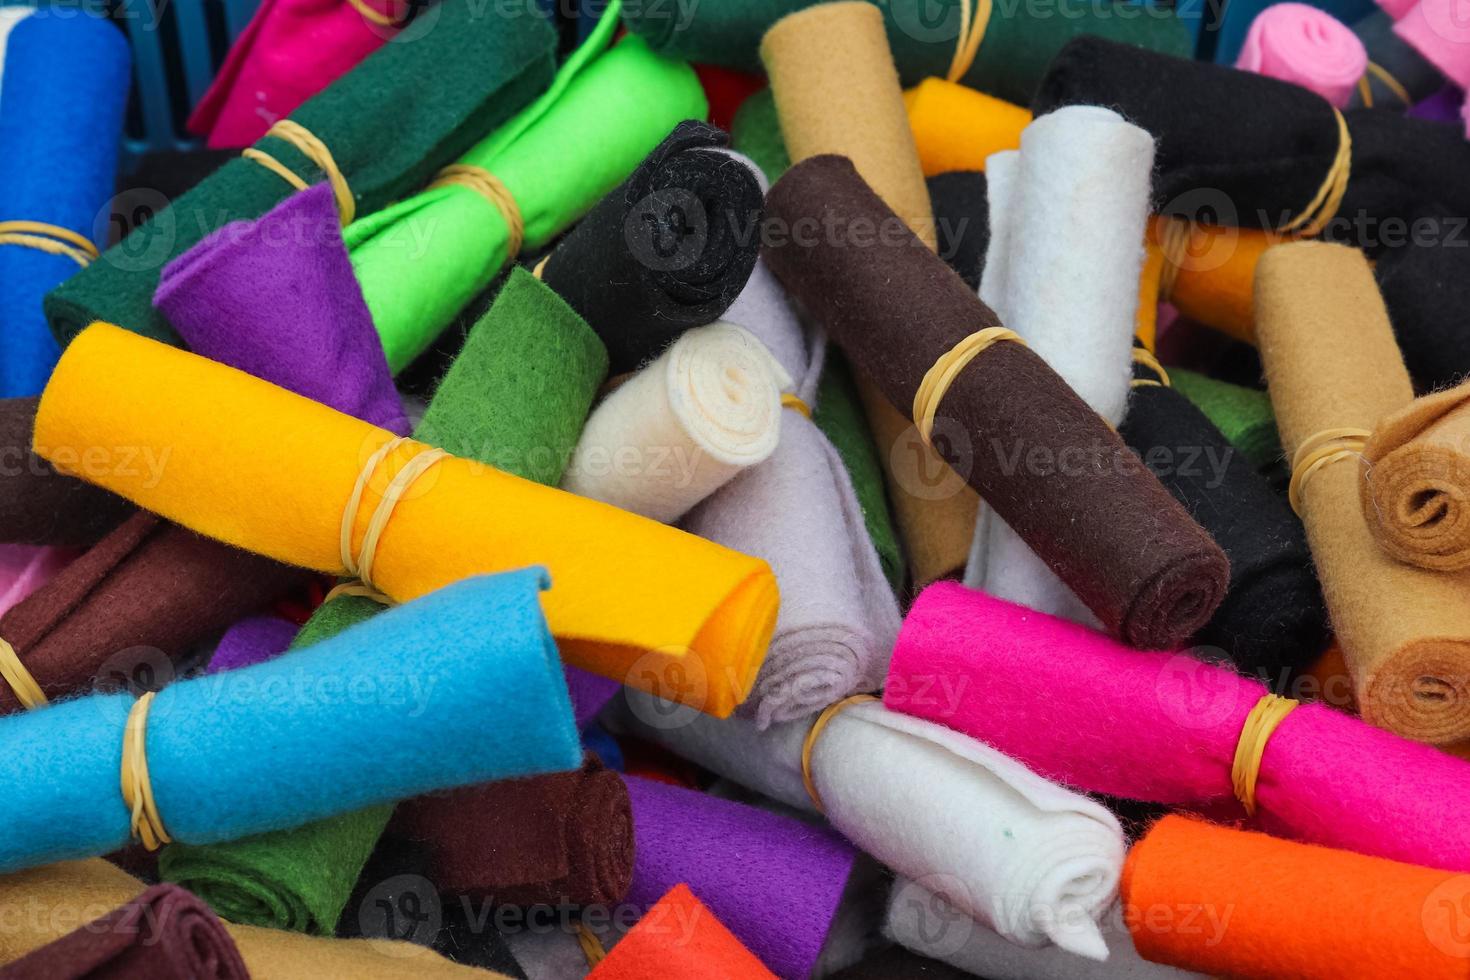 detaljerad närbild på prover av tyg och tyger i olika färger som finns på en tygmarknad foto